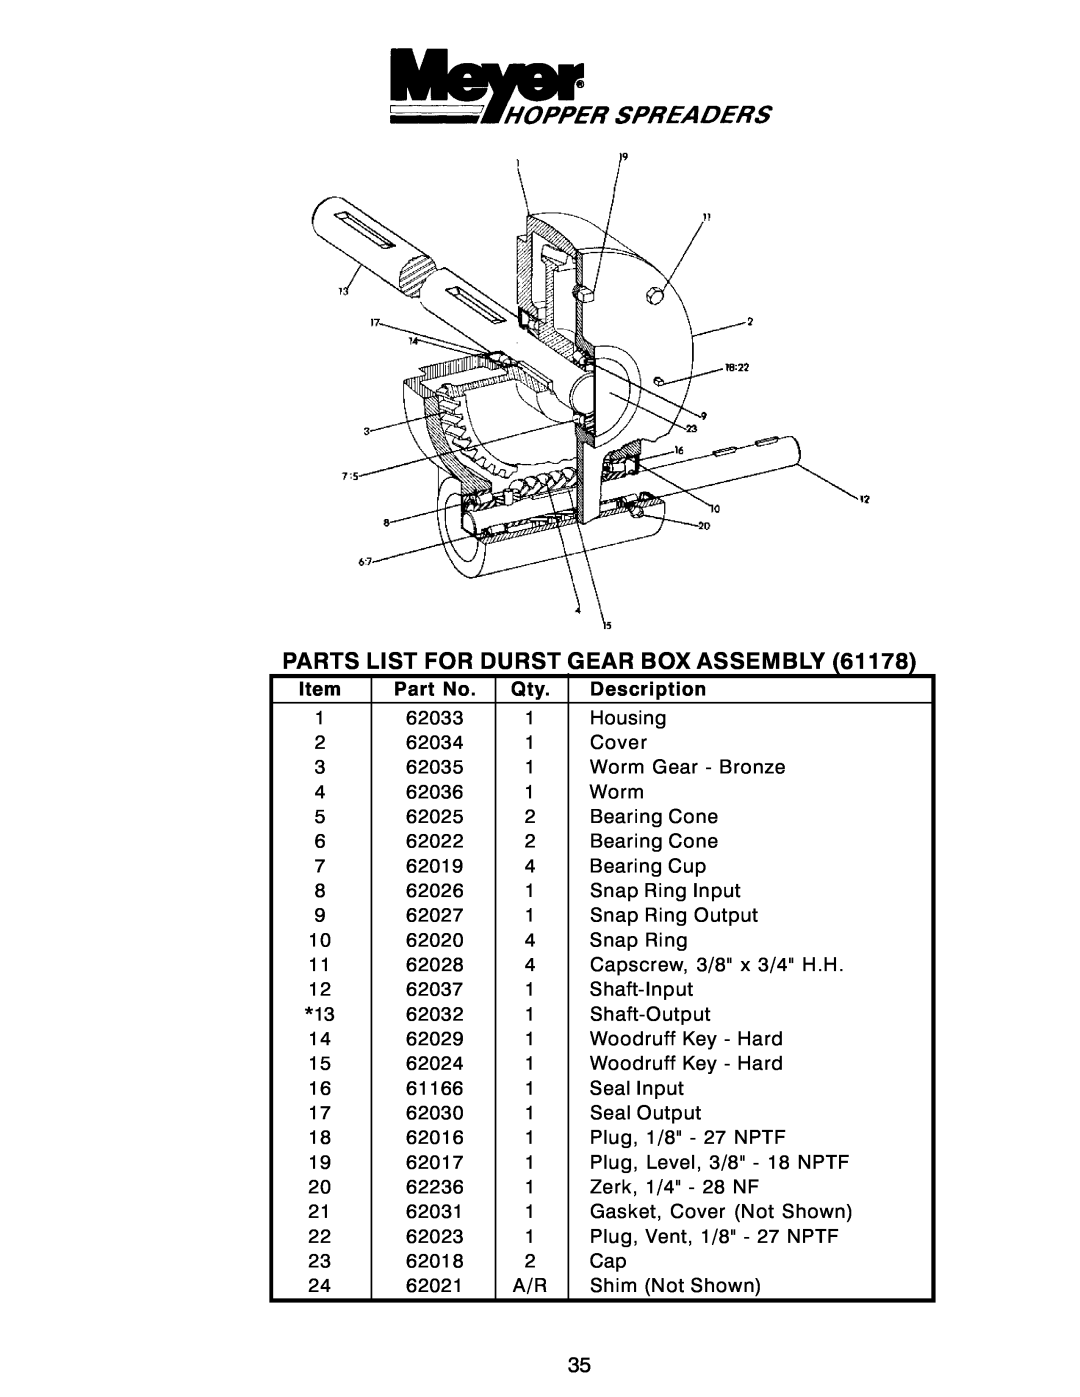 Power Acoustik M-1044, M-944, M-940 instruction manual Parts List For Durst Gear Box Assembly 